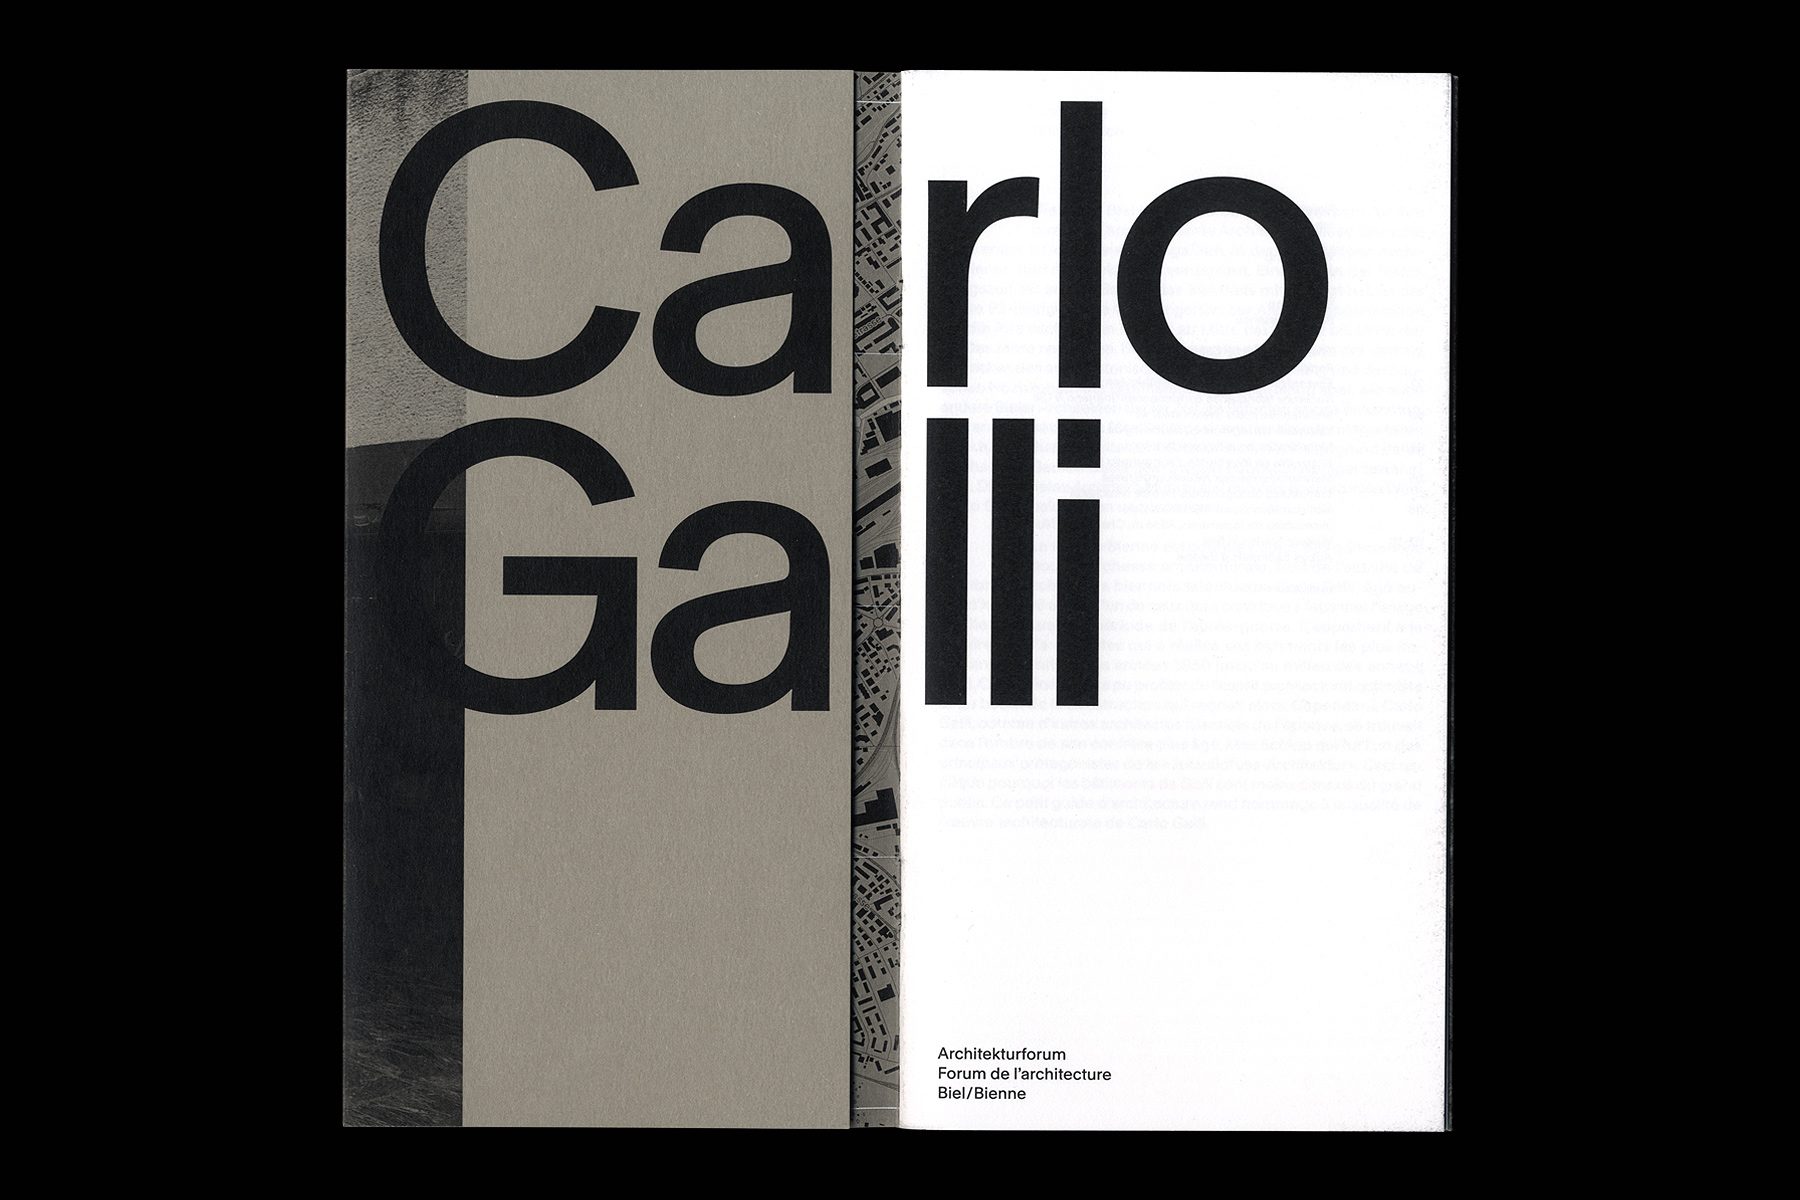 Carlo-Galli_2020_Dimitri-Jeannottat_1800x1200_2